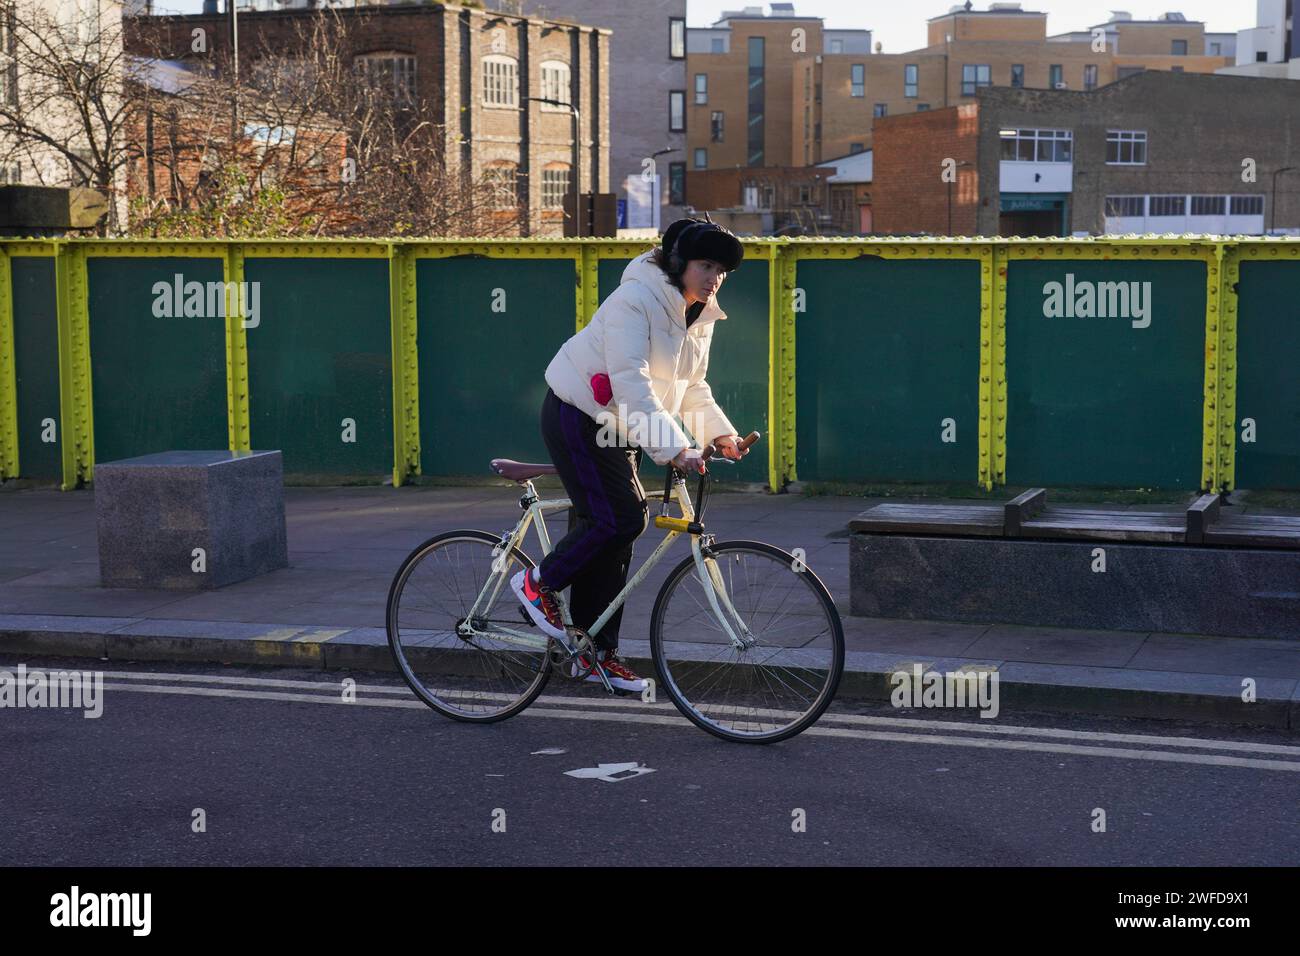 Una ciclista bianca cammina su una bicicletta bianca a Hackney, nella zona est di Londra, sotto il sole invernale della mattina presto. Foto Stock